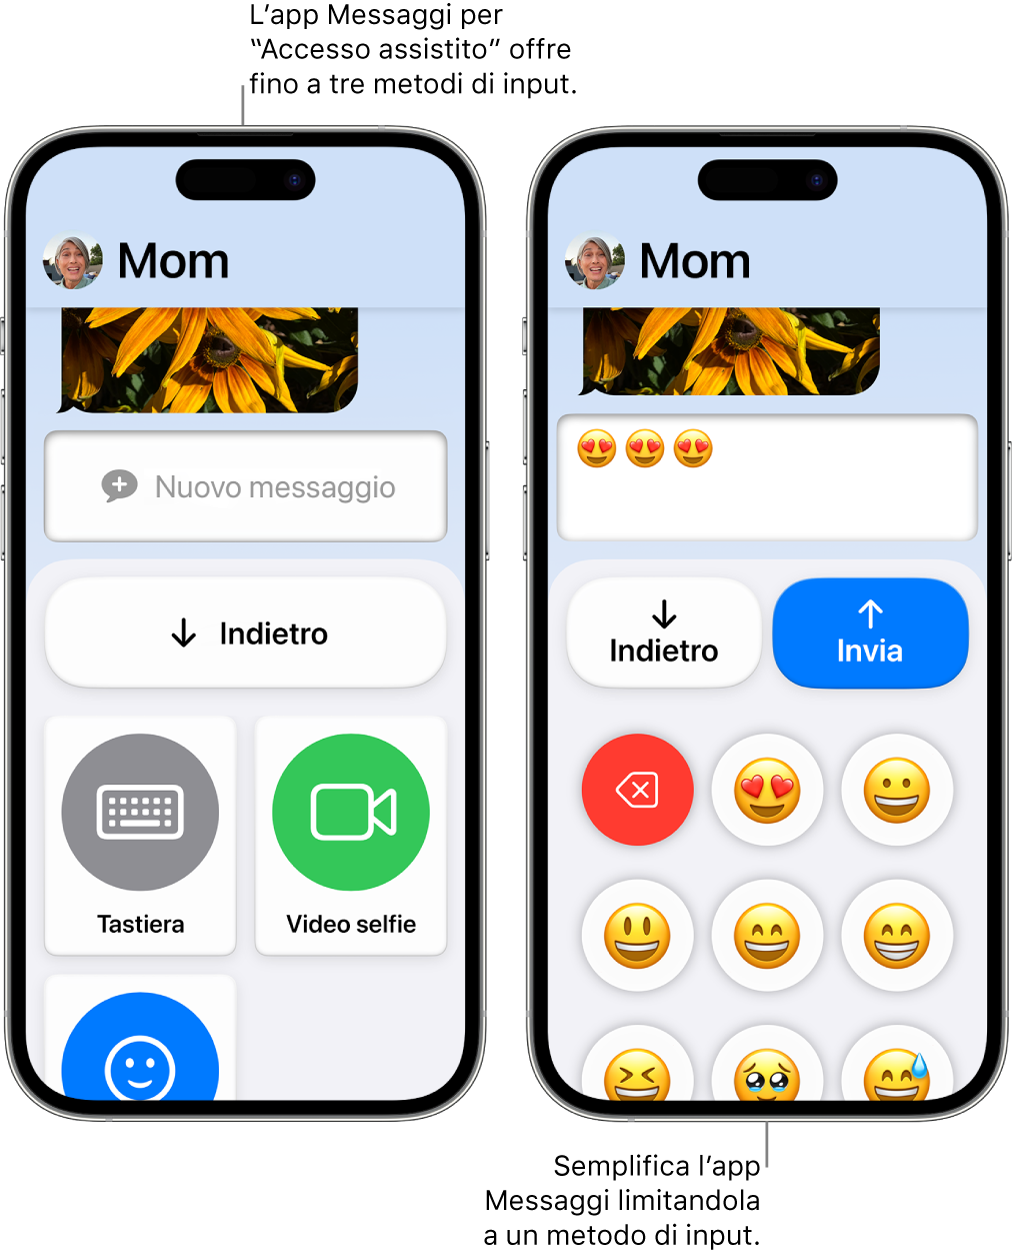 Due iPhone in modalità “Accesso assistito”. Un iPhone mostra l’app Messaggi con i metodi di input che l’utente può scegliere, come Tastiera o “Video selfie”. L’altro mostra un messaggio in fase di invio utilizzando una tastiera composta solo da emoji.